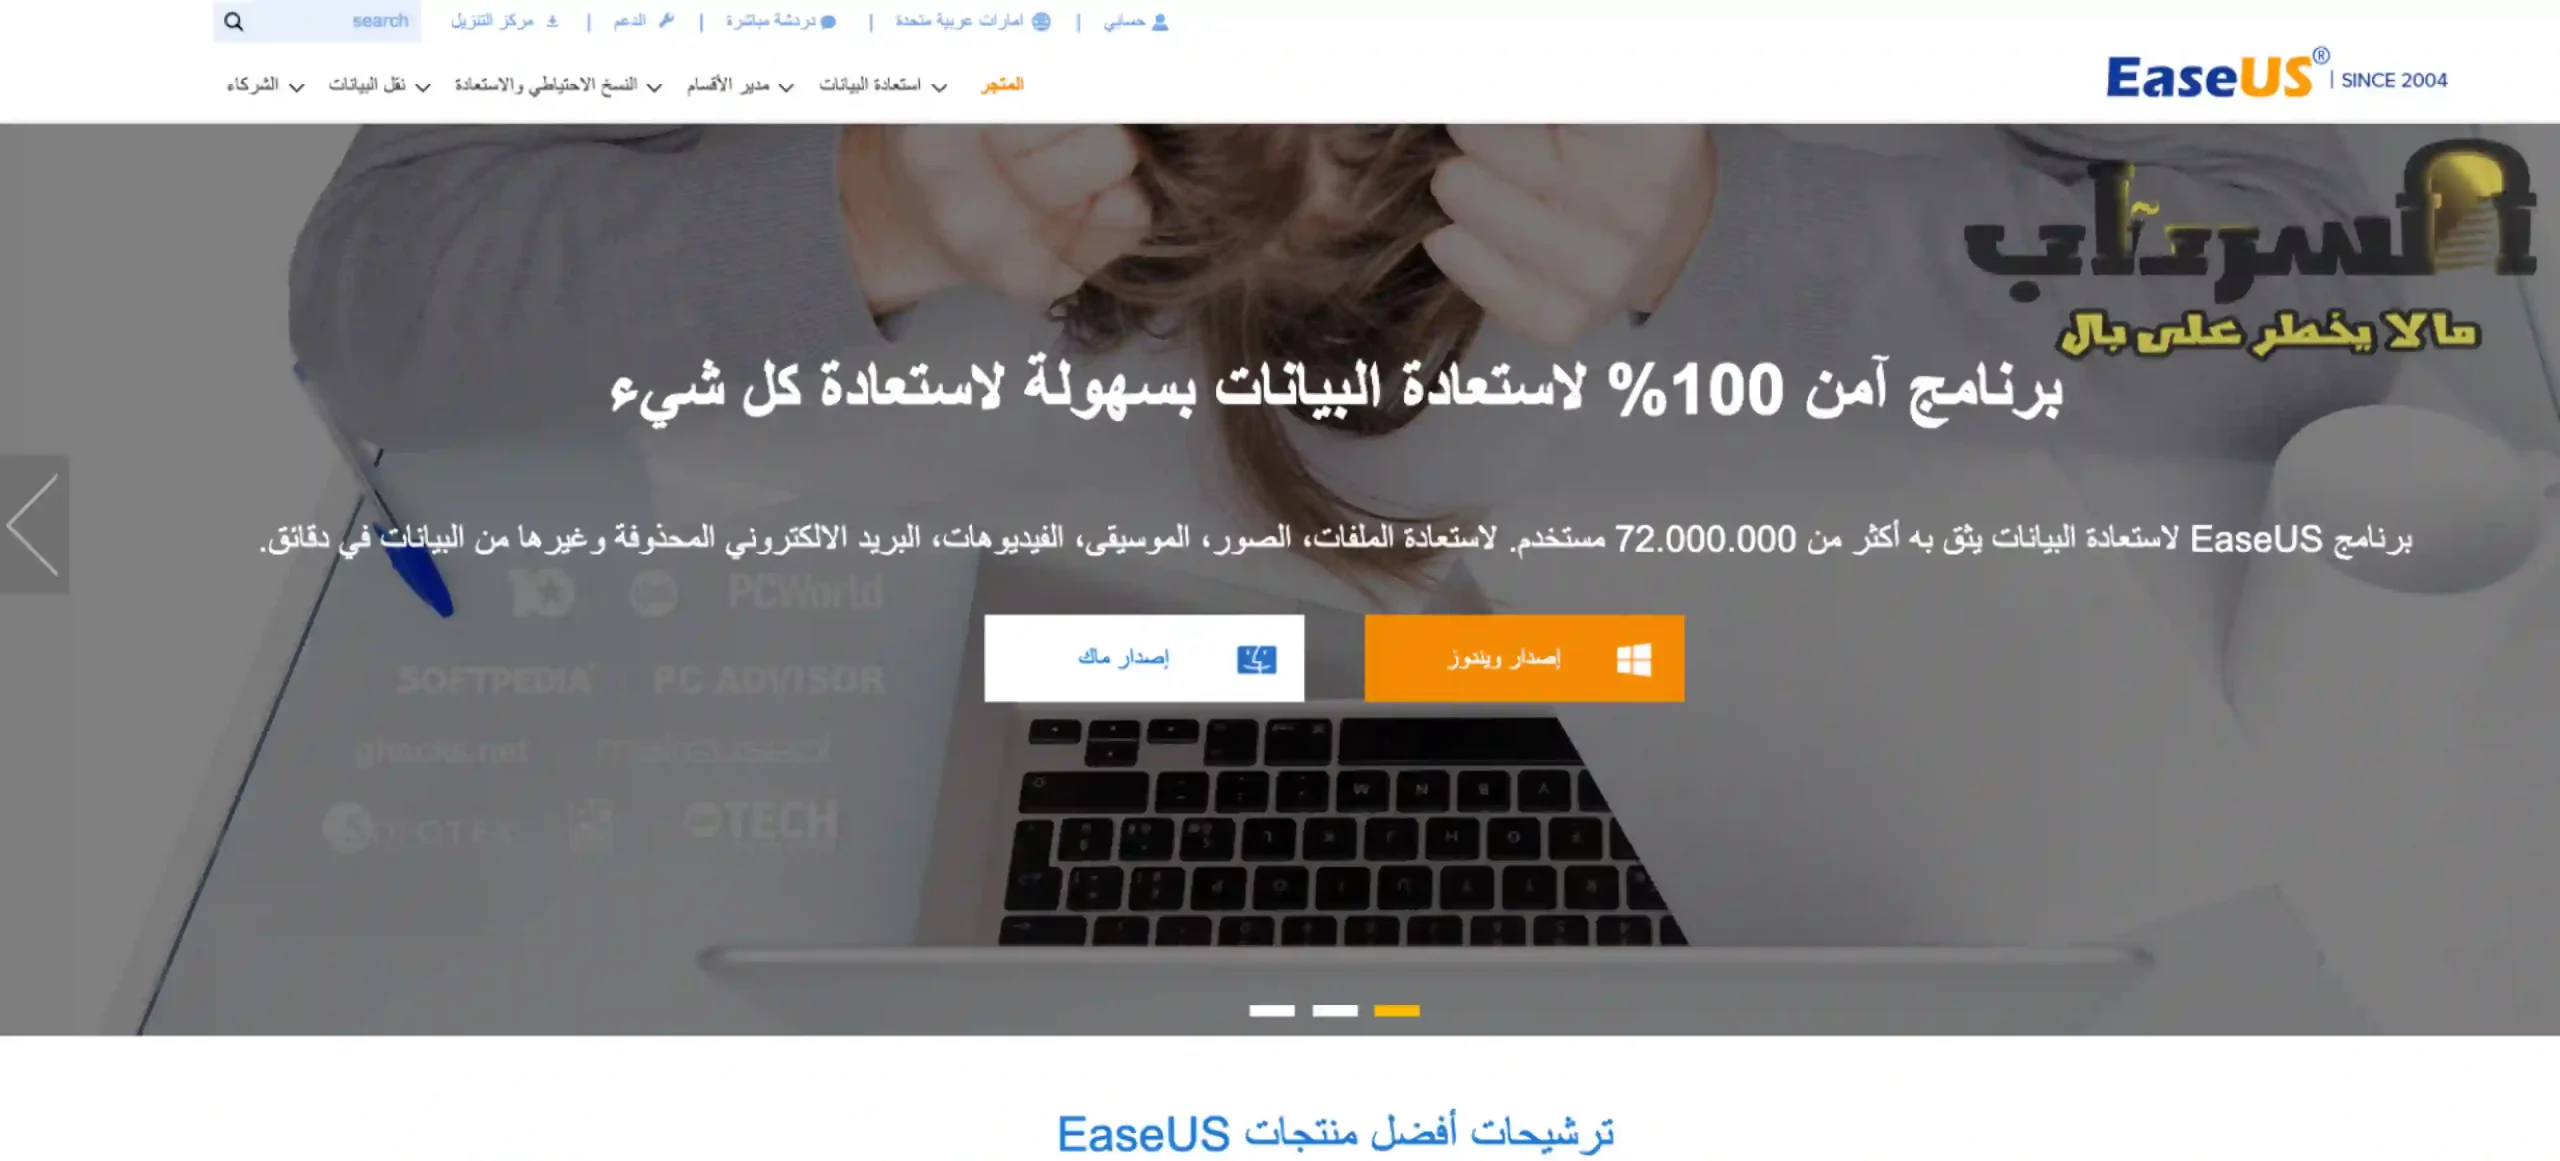 تحميل افضل برنامج استعادة الملفات المحذوفة من الكمبيوتر عربي مجانا